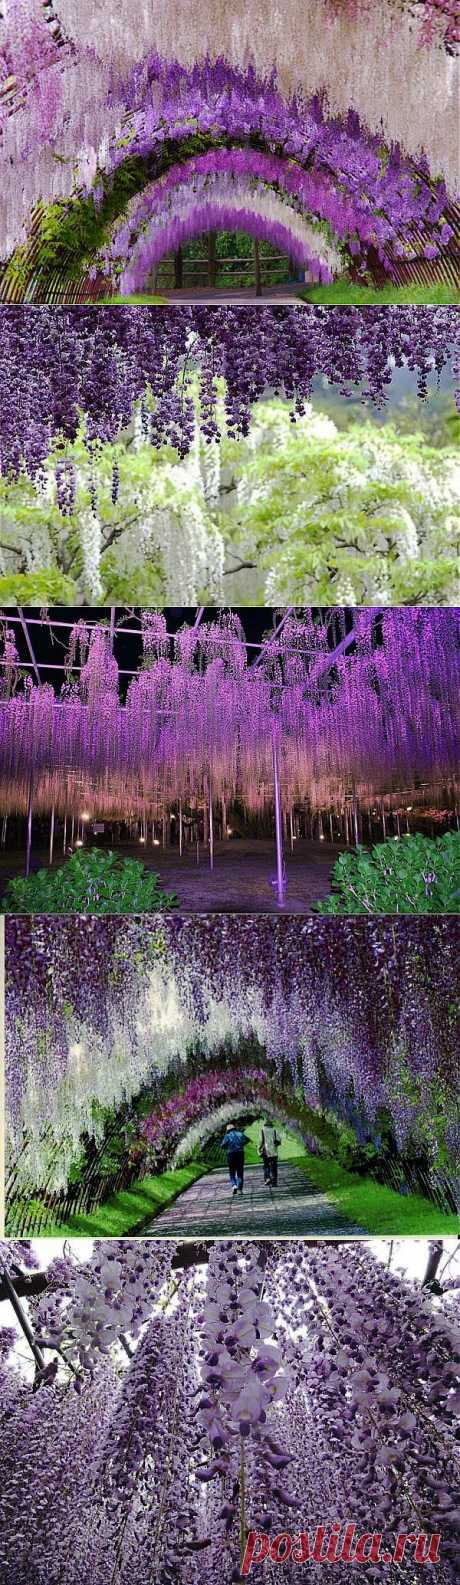 Сказочный сад Кавати  в Японии | Самоцветик